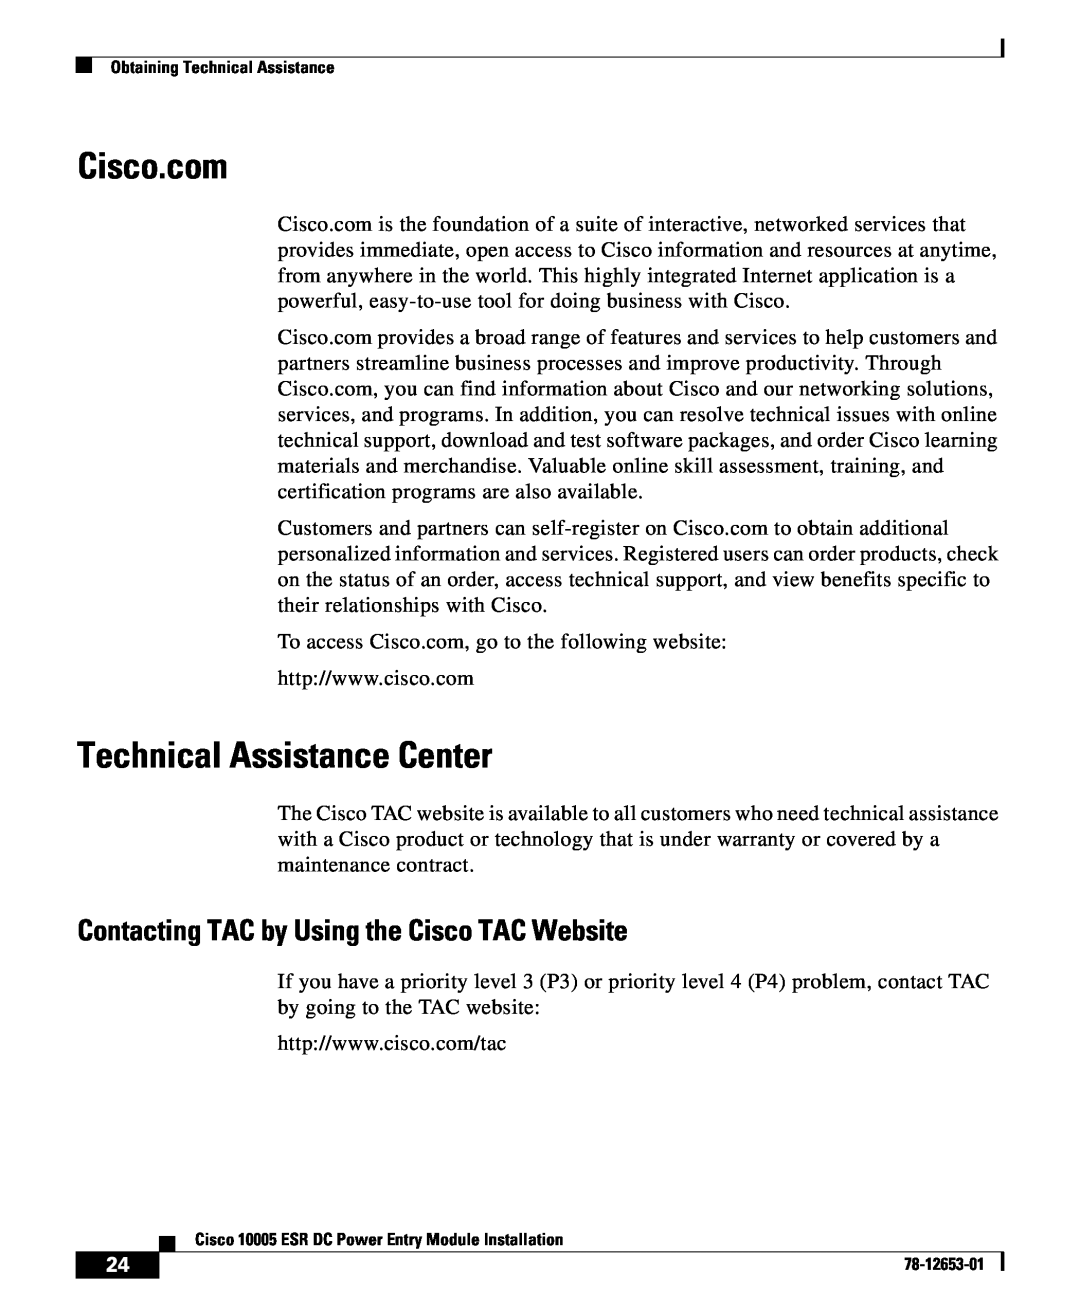 Cisco Systems Cisco 10005 ESR manual Cisco.com, Technical Assistance Center, Contacting TAC by Using the Cisco TAC Website 